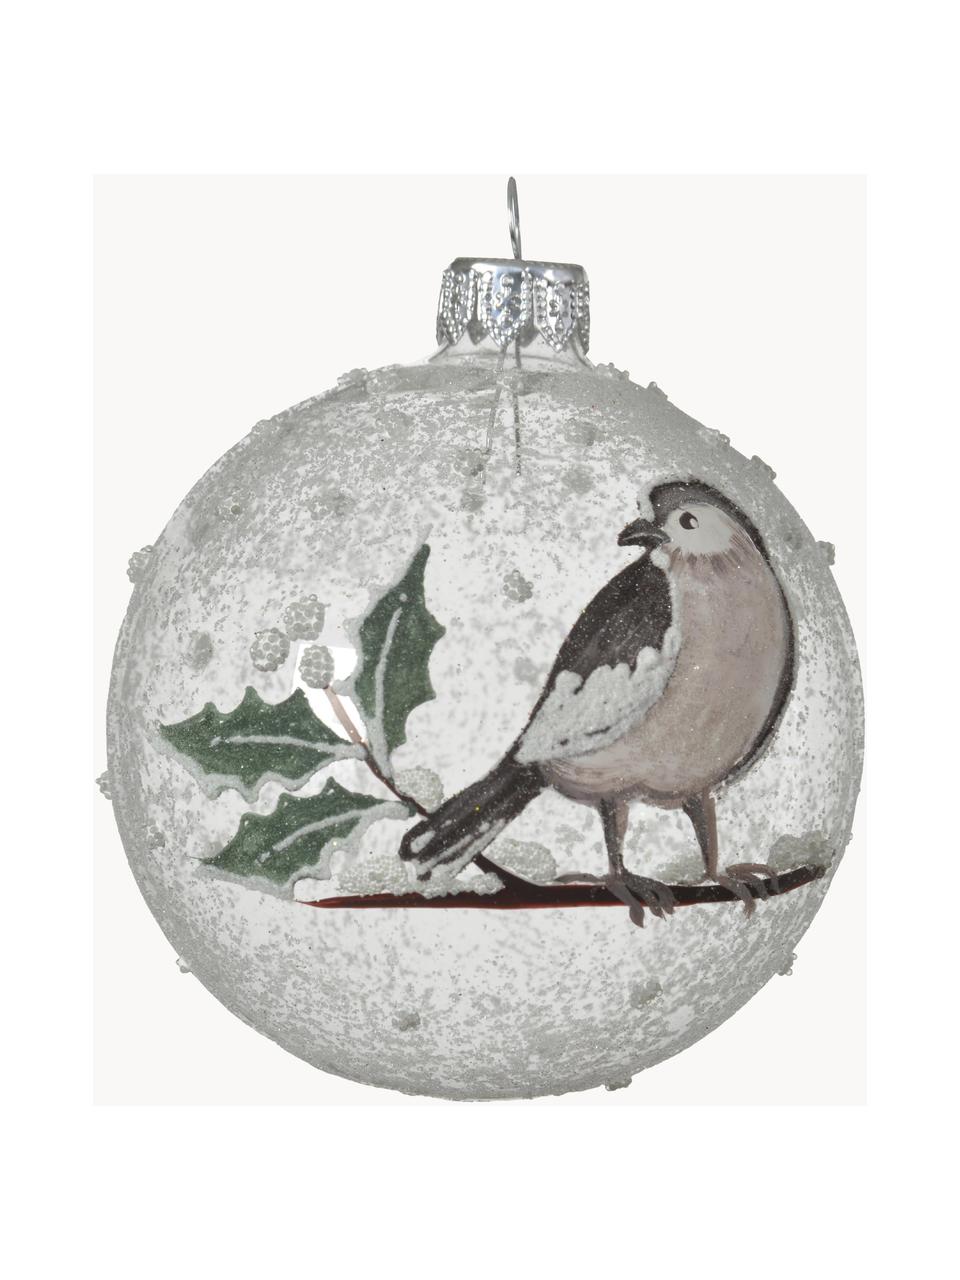 Mundgeblasene Weihnachtskugeln Birdy, 6 Stück, Glas, Transparent, Weiß, Grün, Braun, Ø 8 cm